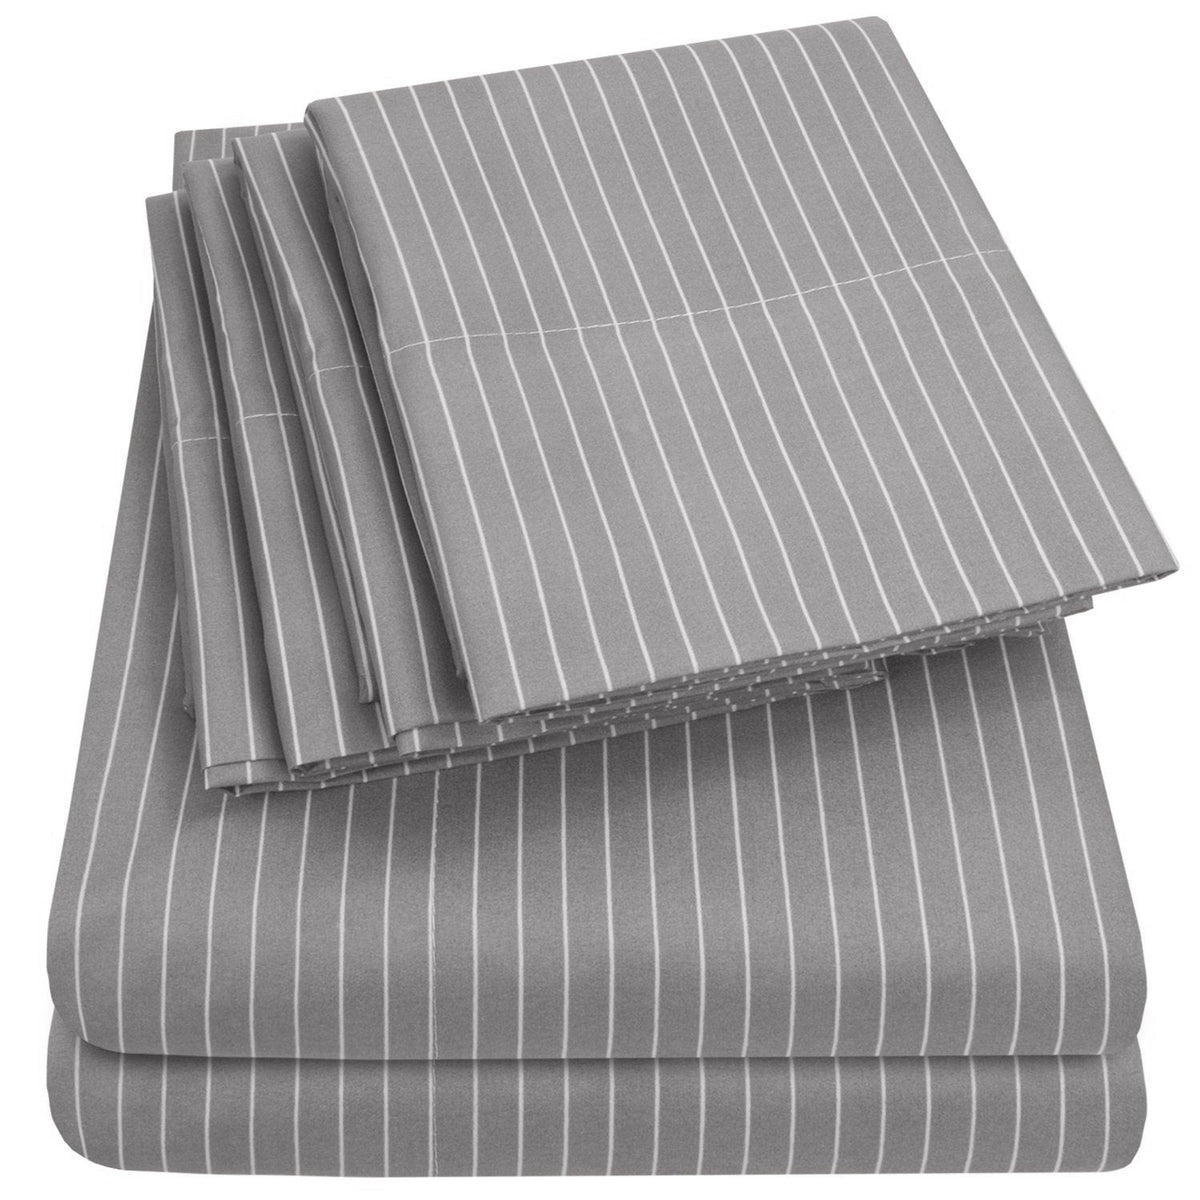 Deluxe 6-Piece Bed Sheet Set (Loft Pinstripe Gray) - Folded